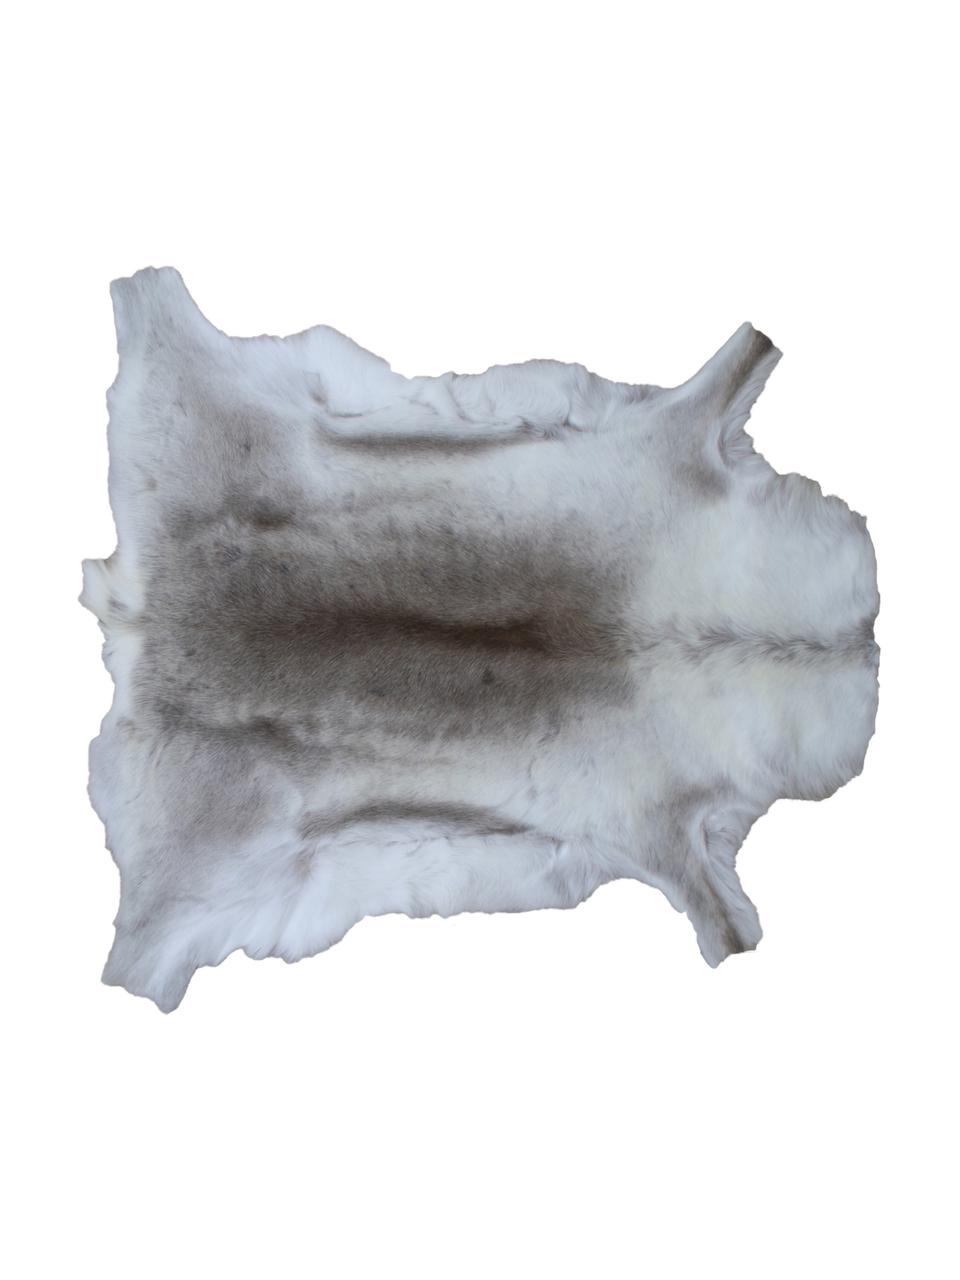 Dywan ze skóry renifera Zontas, Skóra renifera, Odcienie brązowego, biały, Unikatowa skóra z renifera 175, 75 x 115 cm